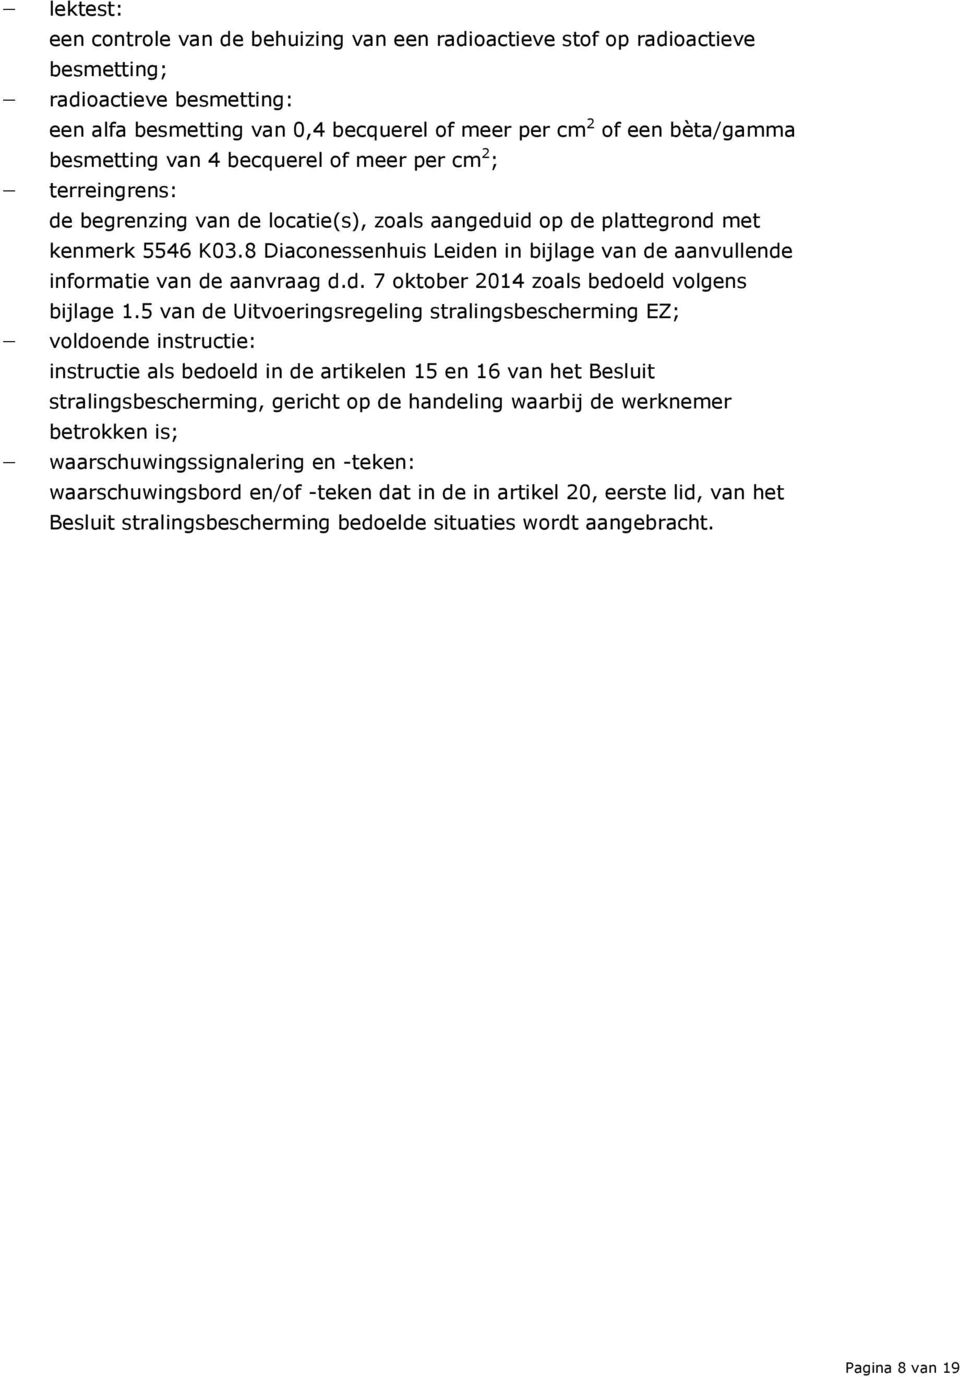 8 Diaconessenhuis Leiden in bijlage van de aanvullende informatie van de aanvraag d.d. 7 oktober 2014 zoals bedoeld volgens bijlage 1.